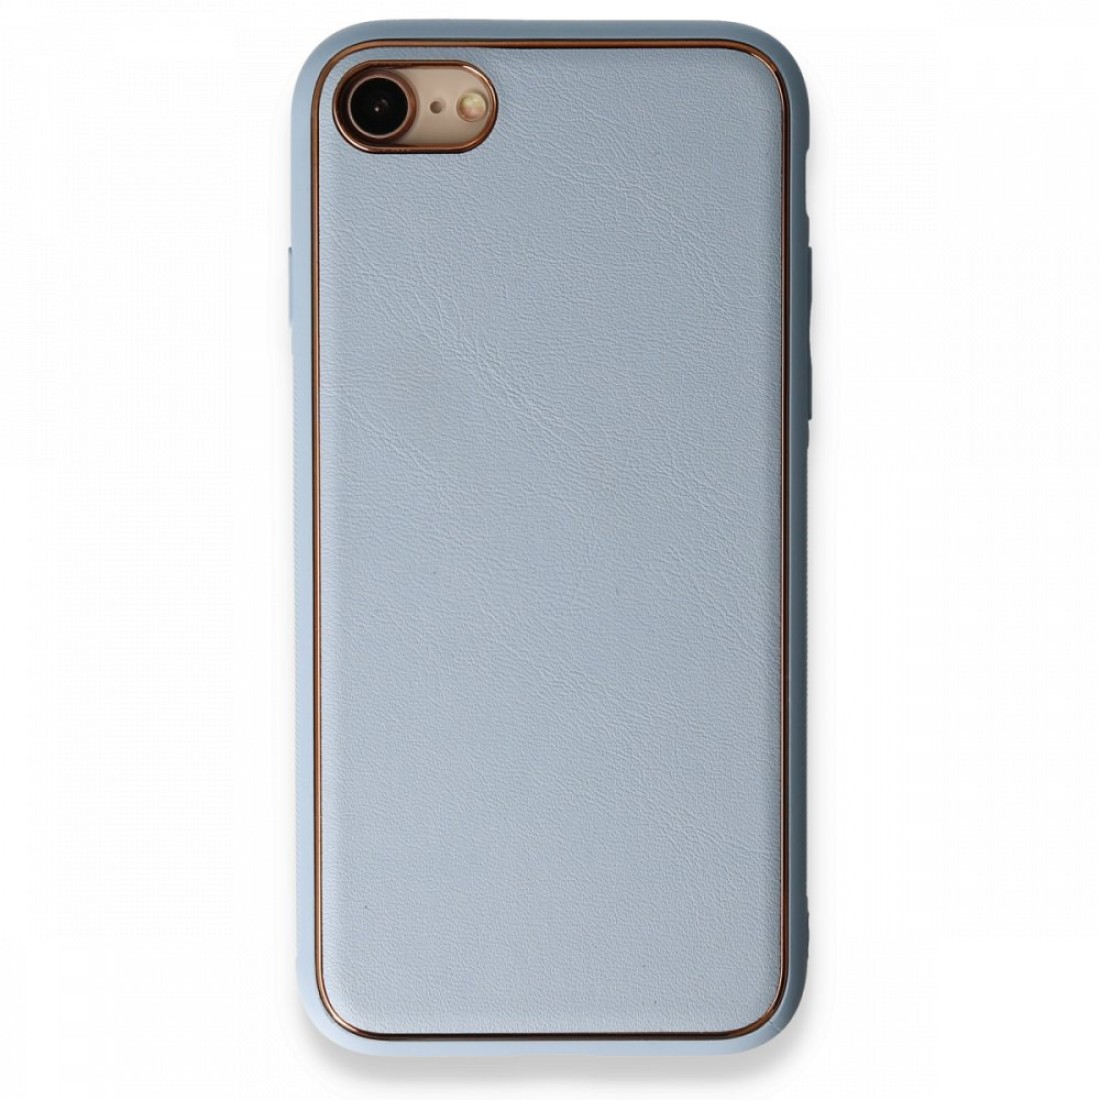 Apple iPhone 7 Kılıf Coco Deri Silikon Kapak - Açık Mavi